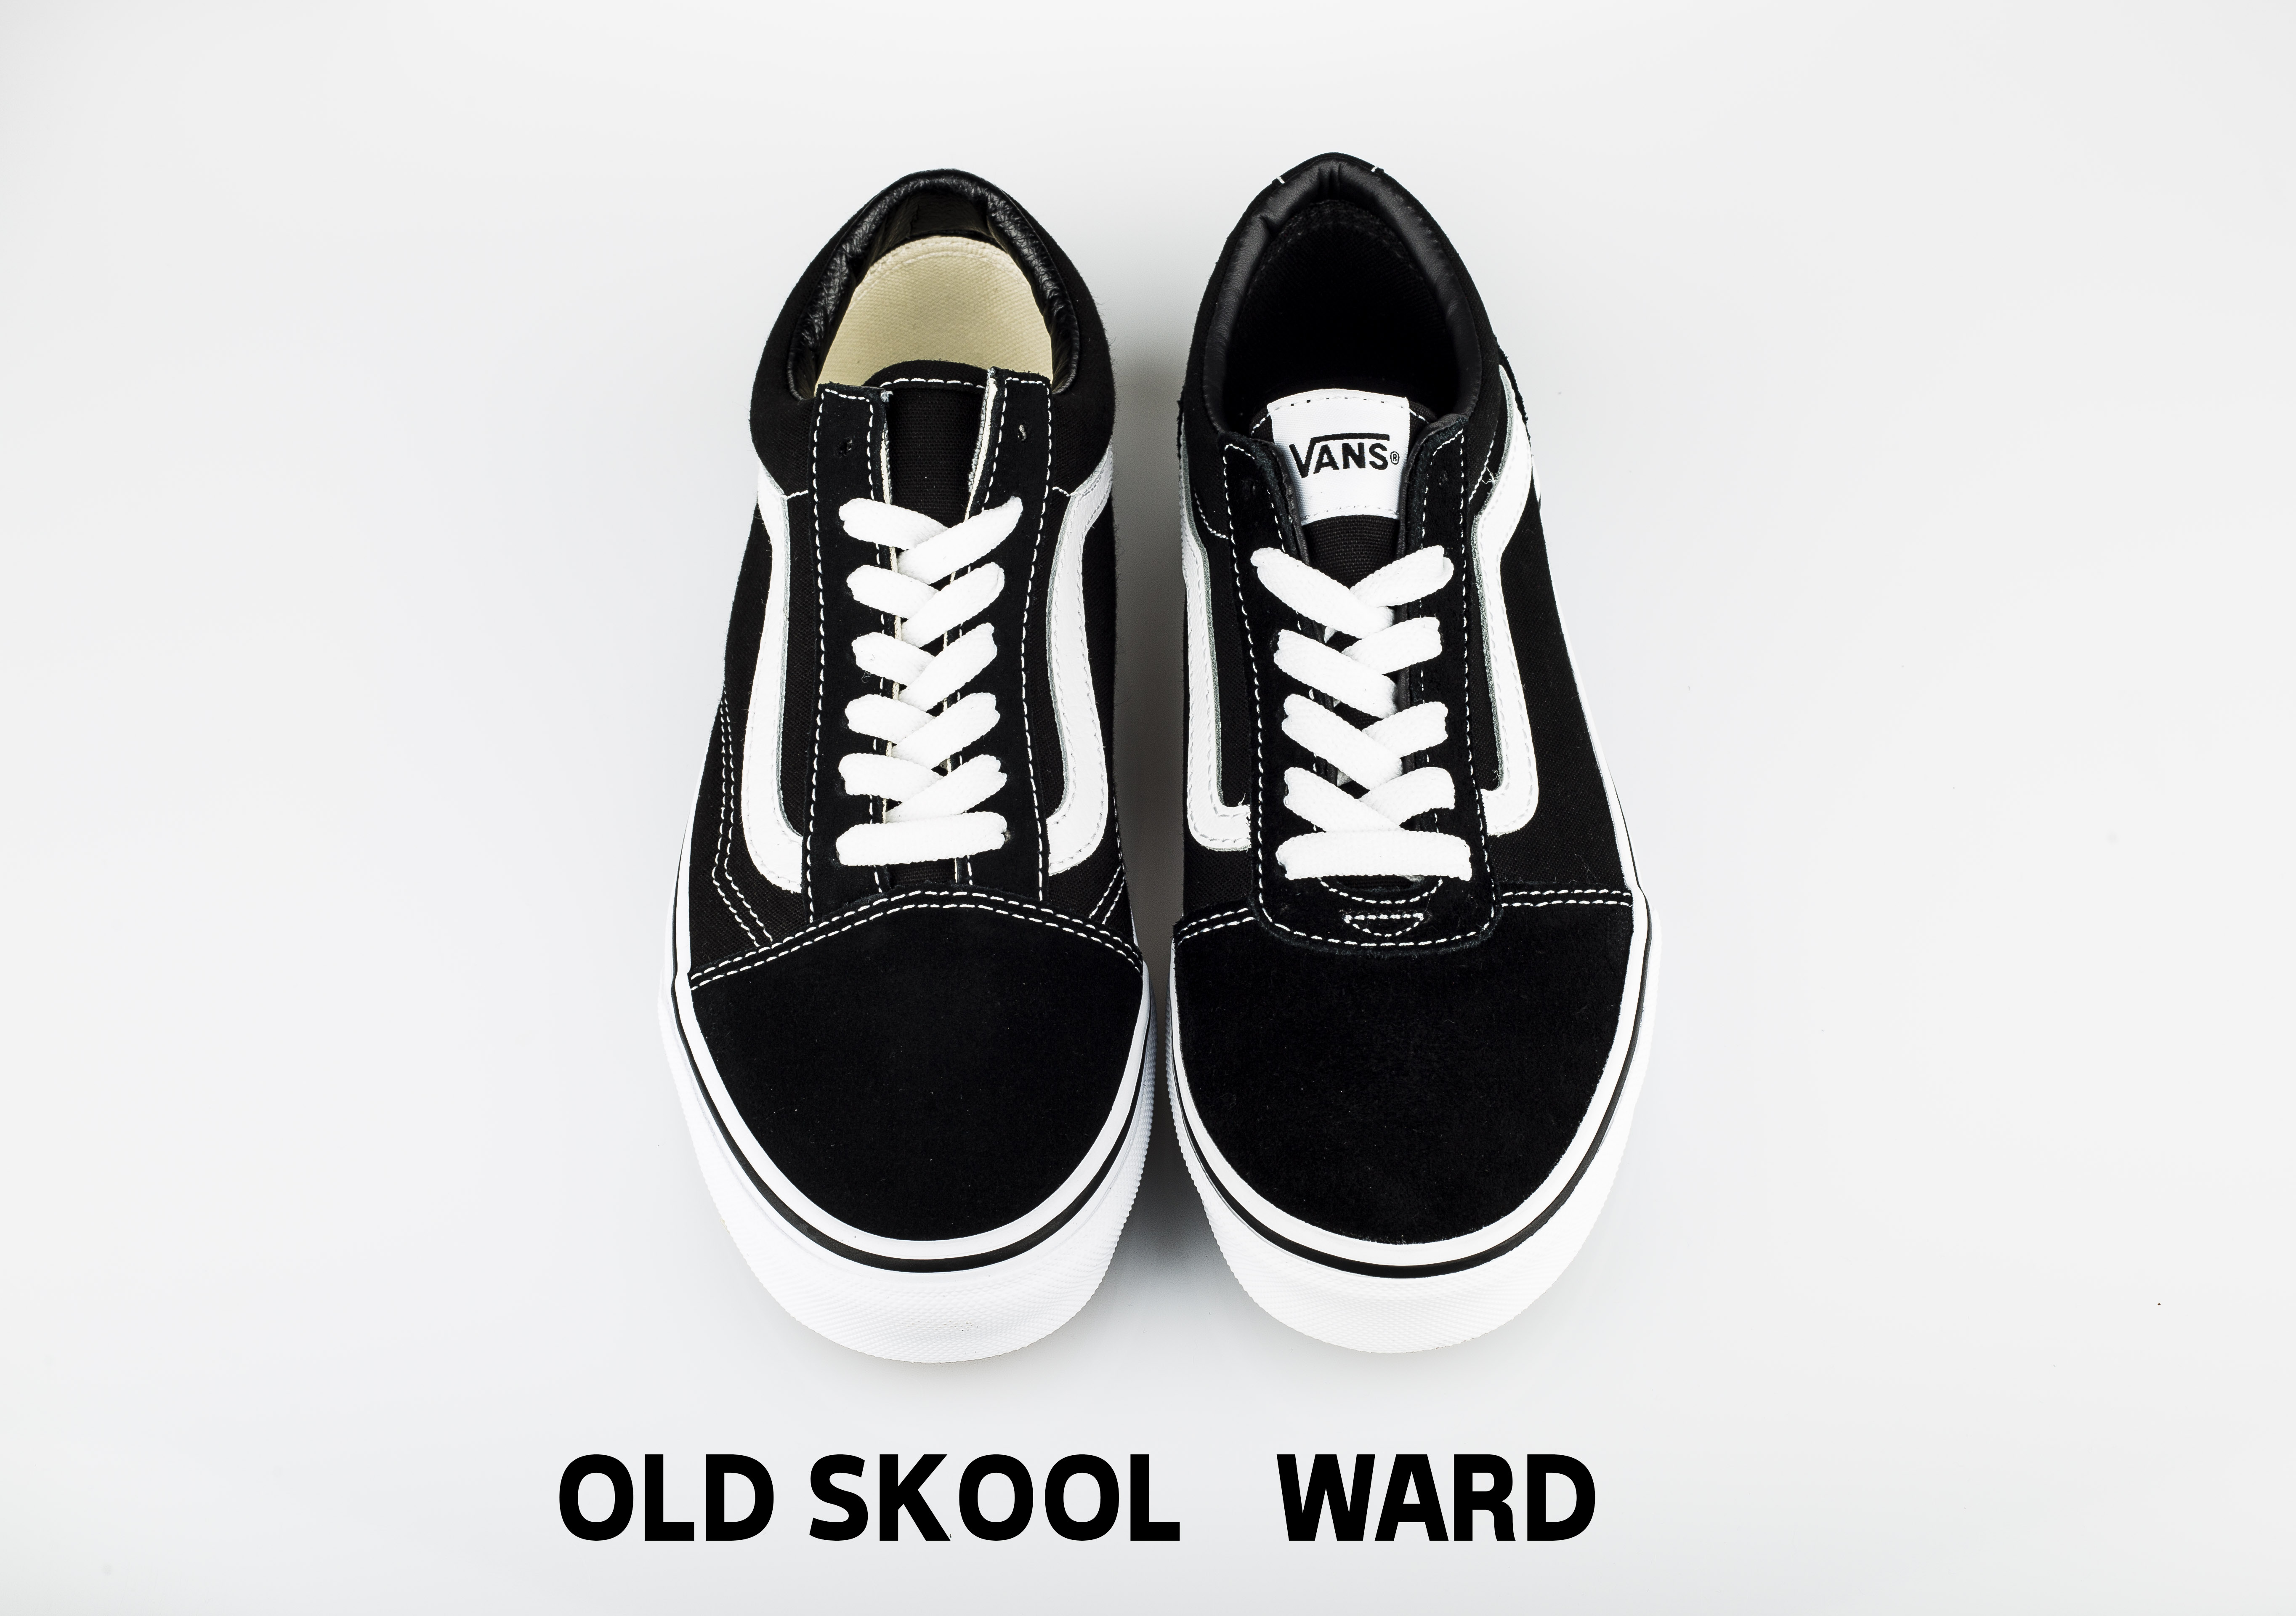 old skool vs ward